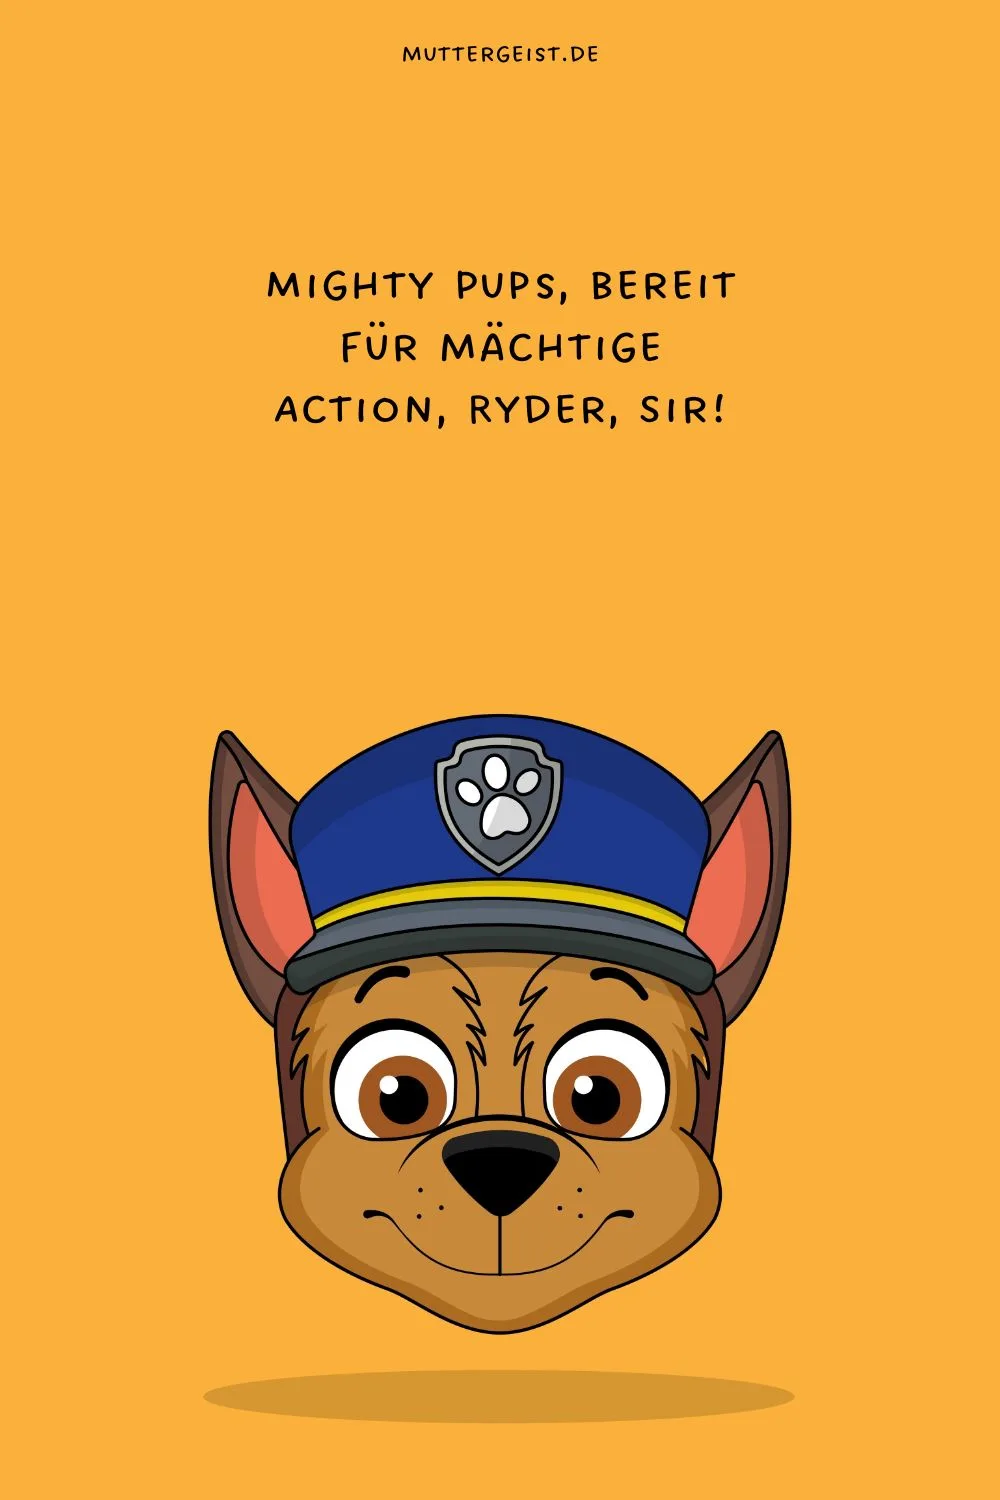 Mighty Pups, bereit für mächtige Action, Ryder, Sir!